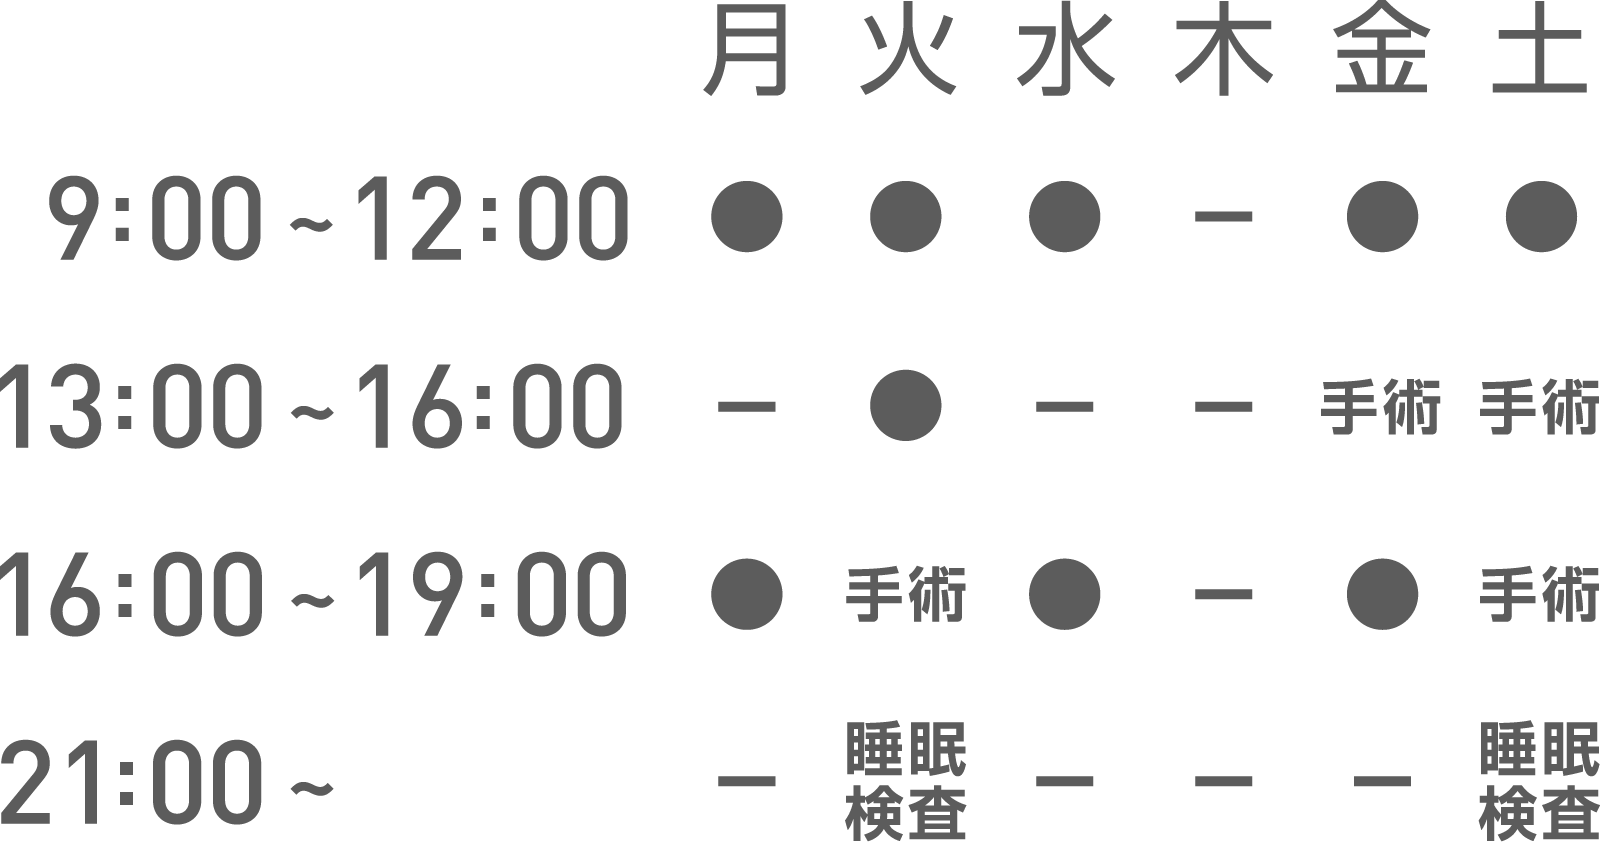 京都の耳鼻科 大岡医院 稲荷診療所 の地図・診療時間